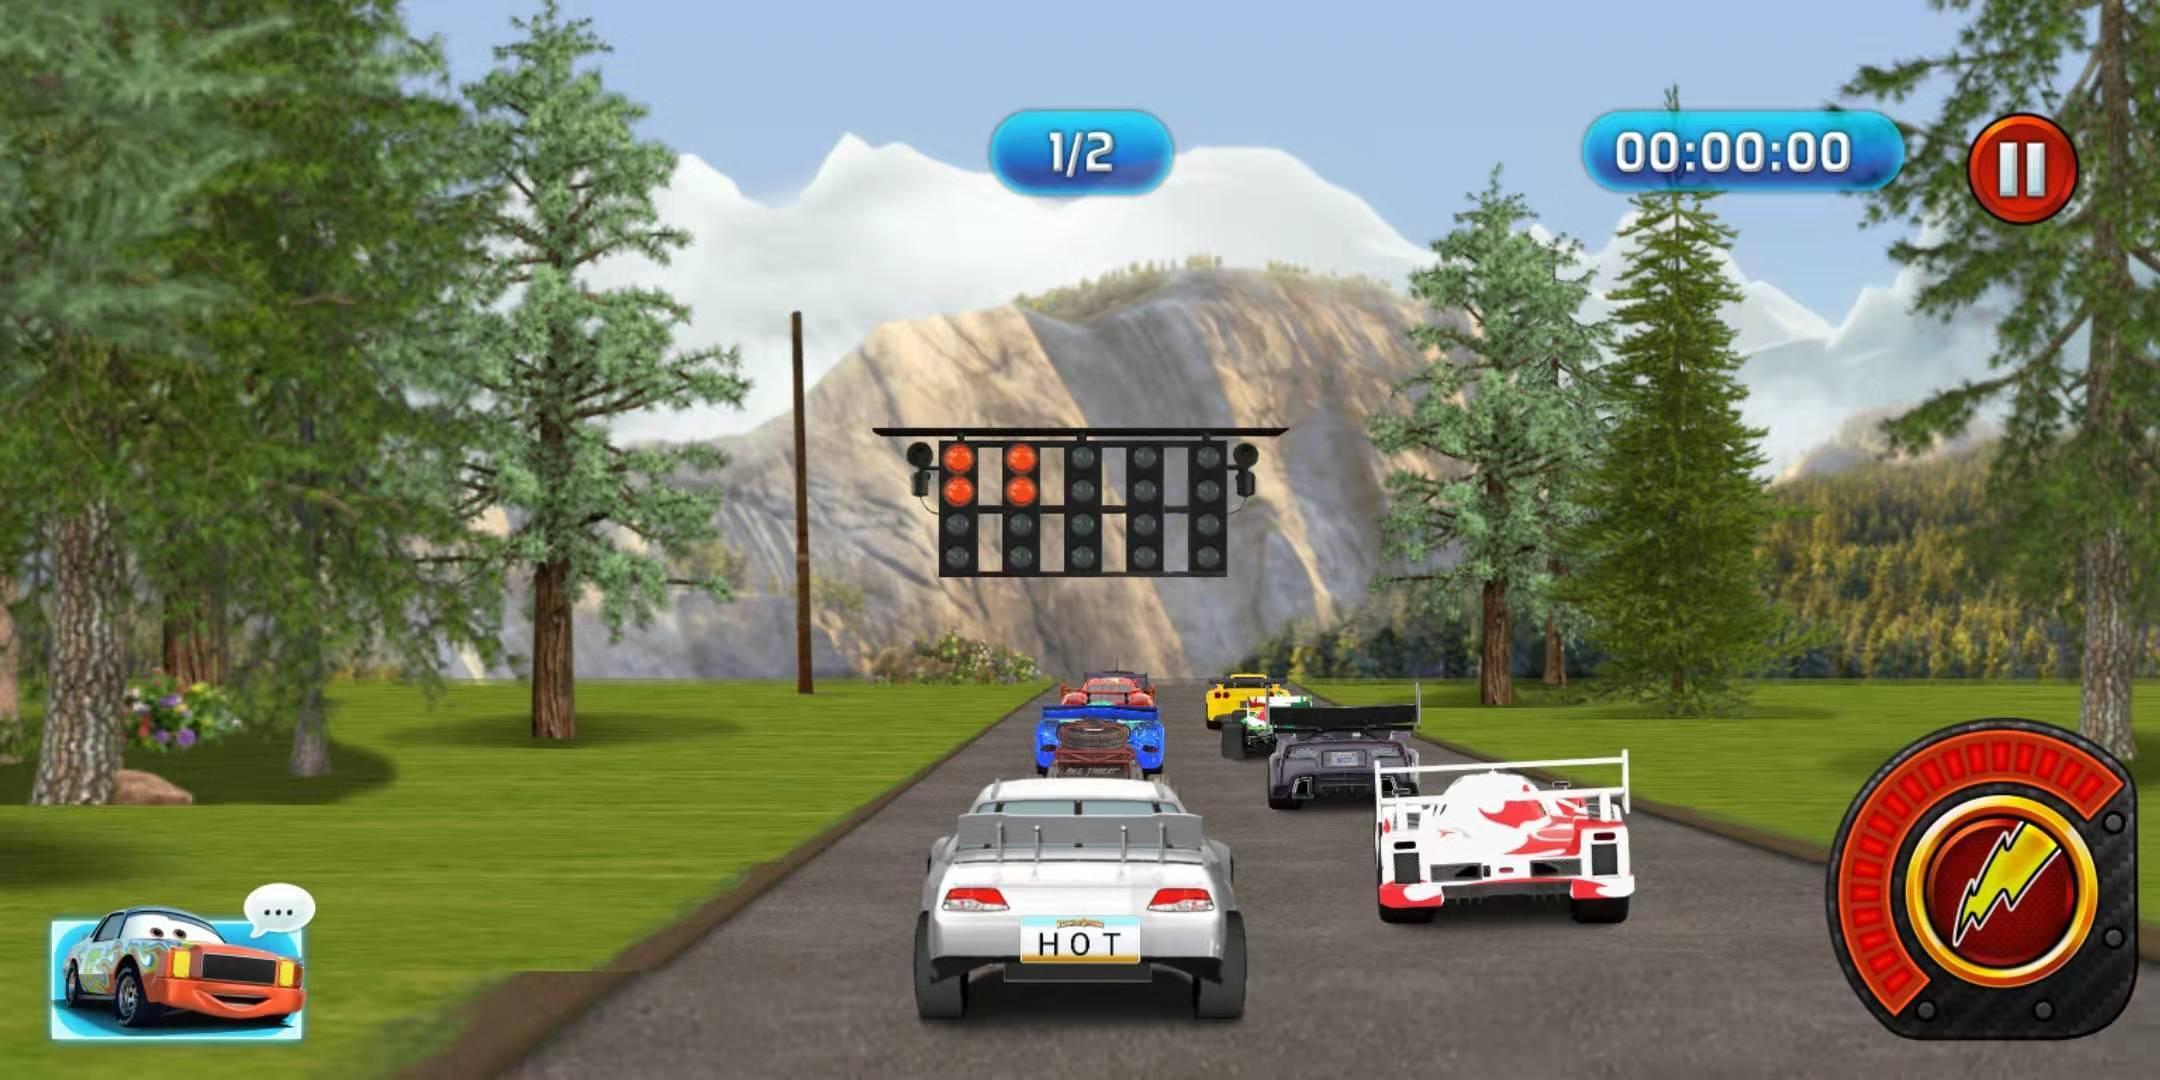 Взломанная версия car 3. Lightning Speed car Racing игра. Тачки скорость молнии играть. Lightning Speed OOO 86.